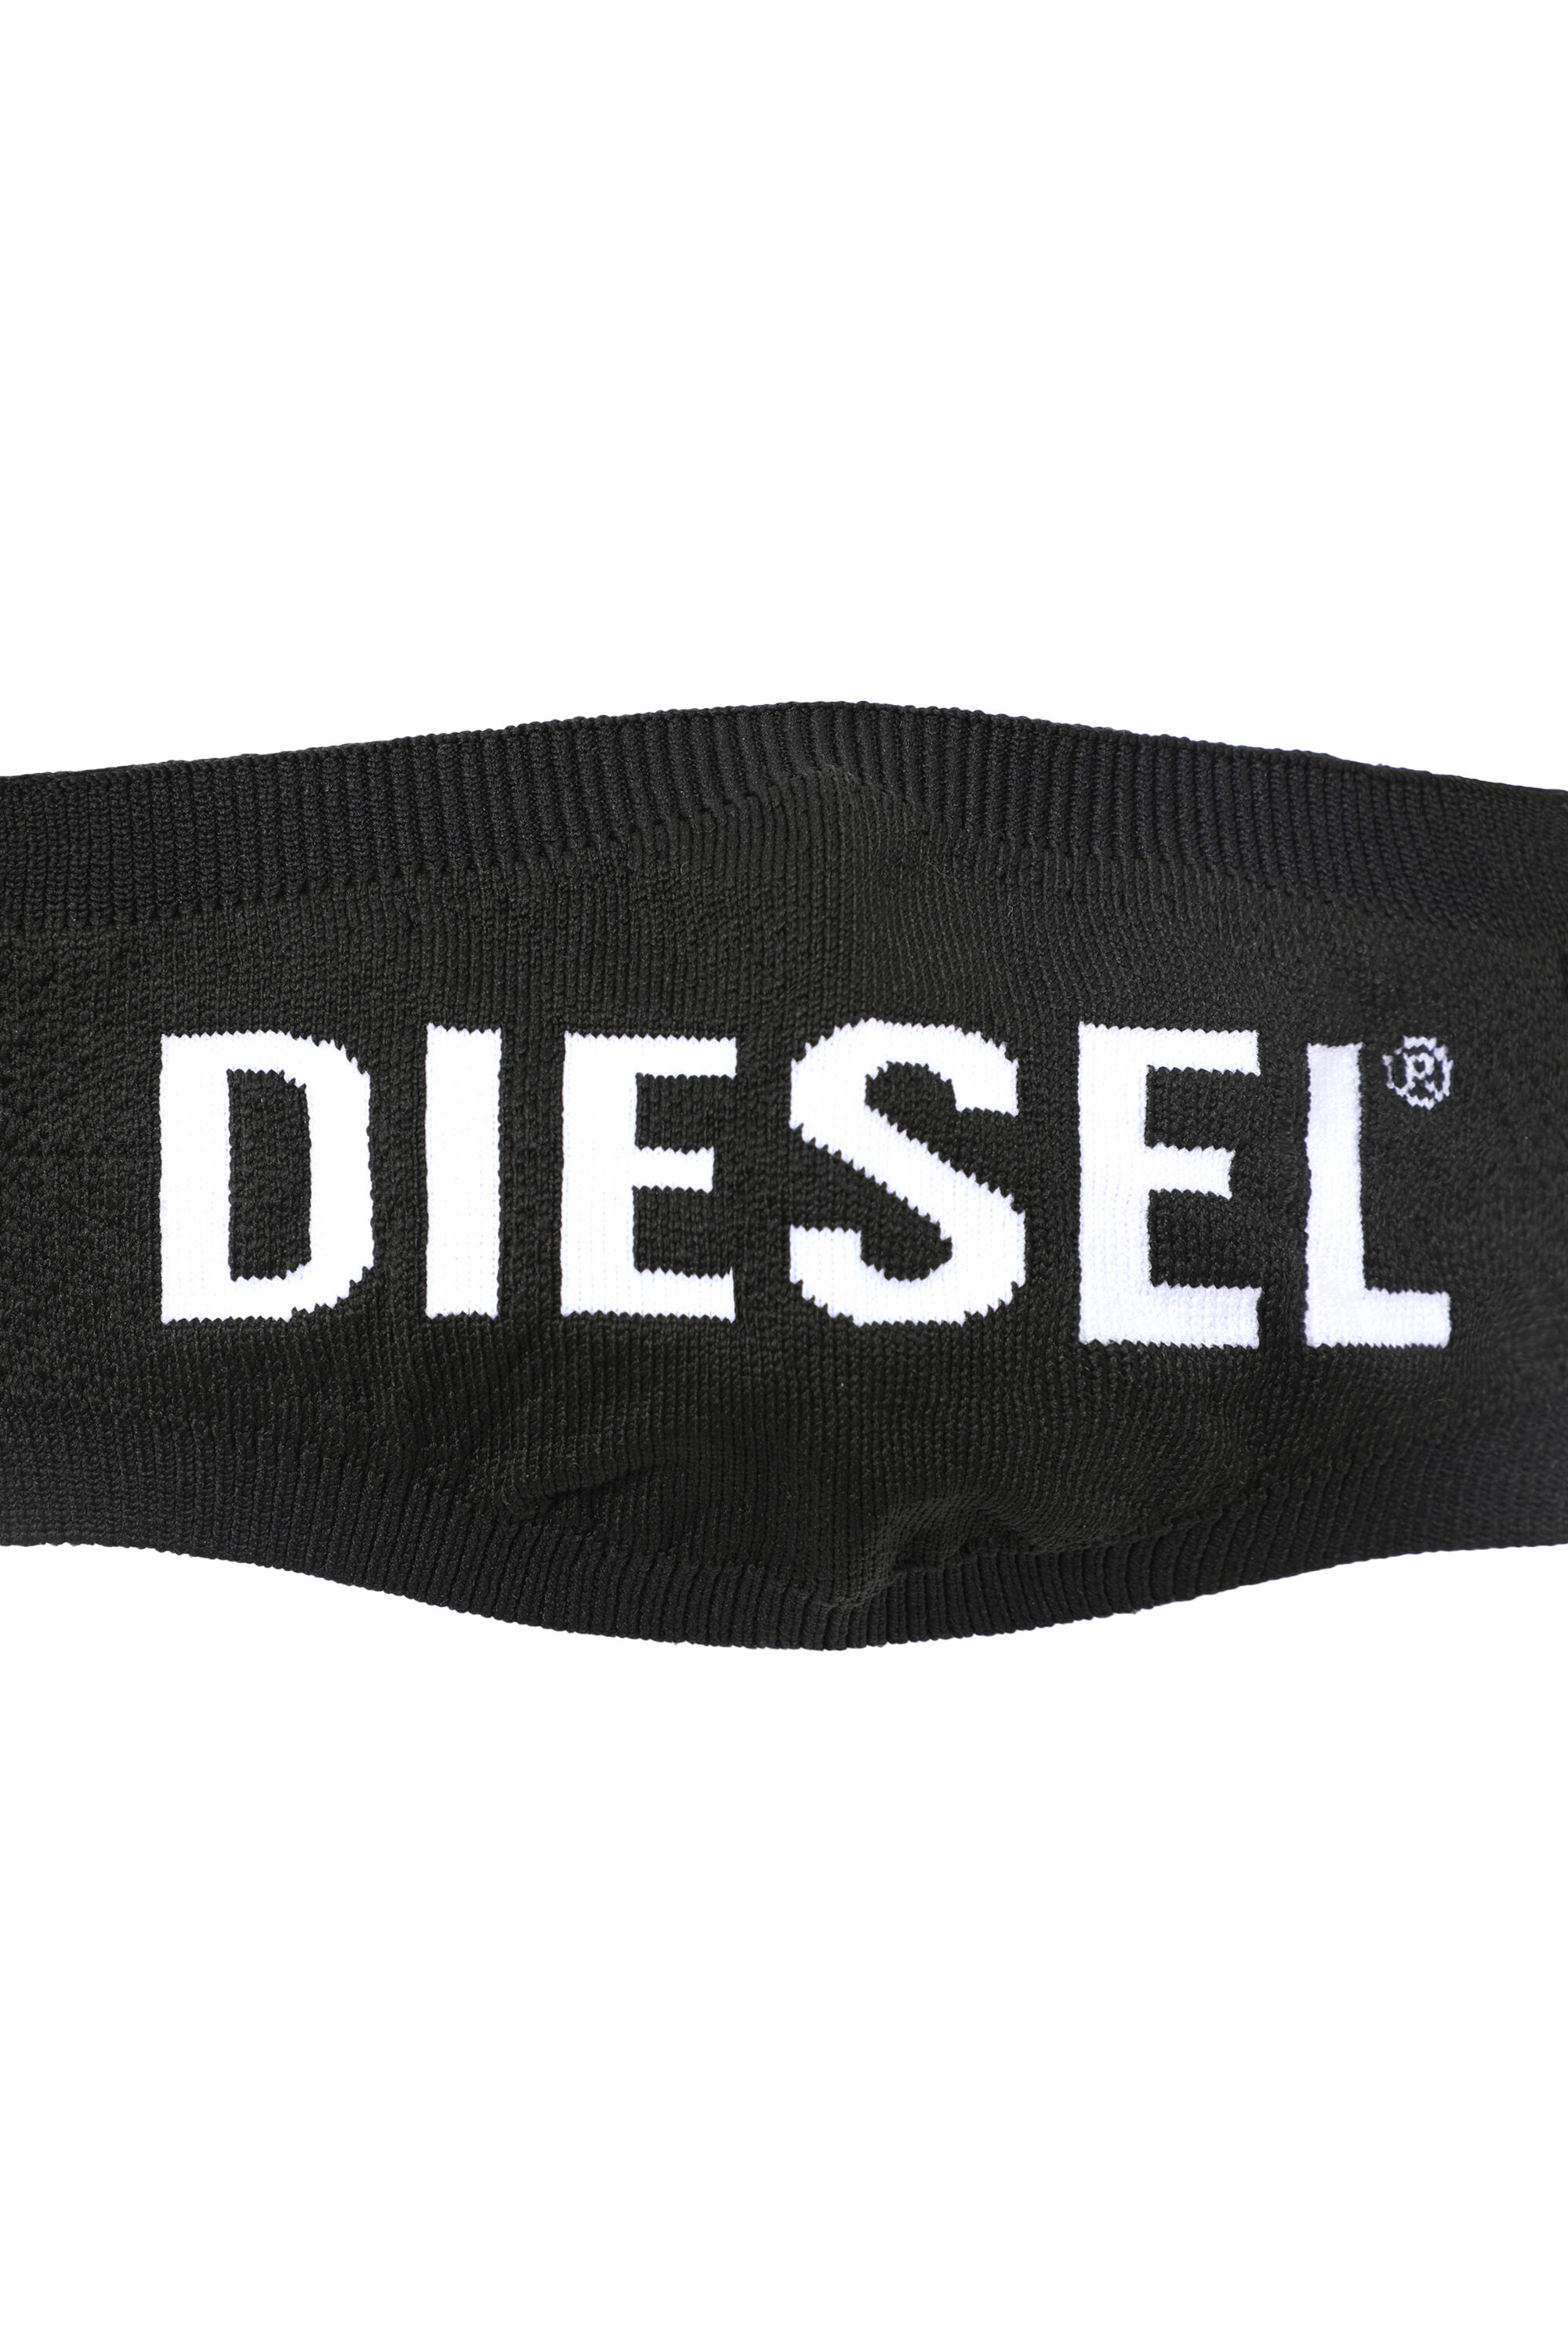 Diesel - VELIC, Schwarz - Image 2